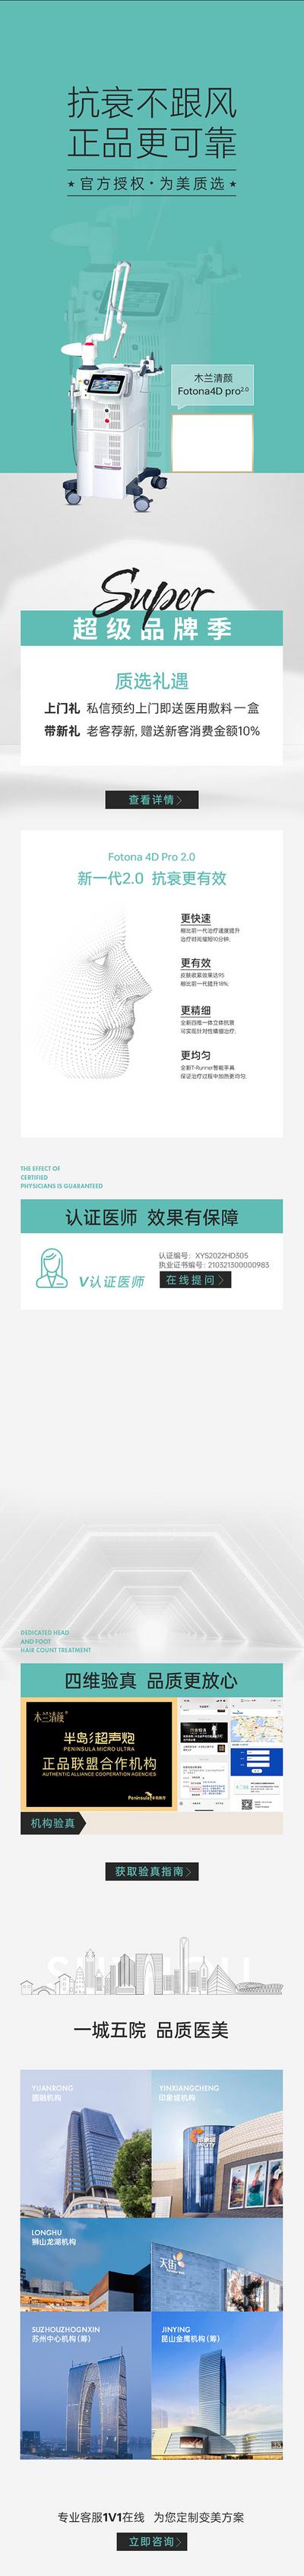 南门网 广告 海报 医美 仪器 设备 介绍 长图 科普 木兰清颜 